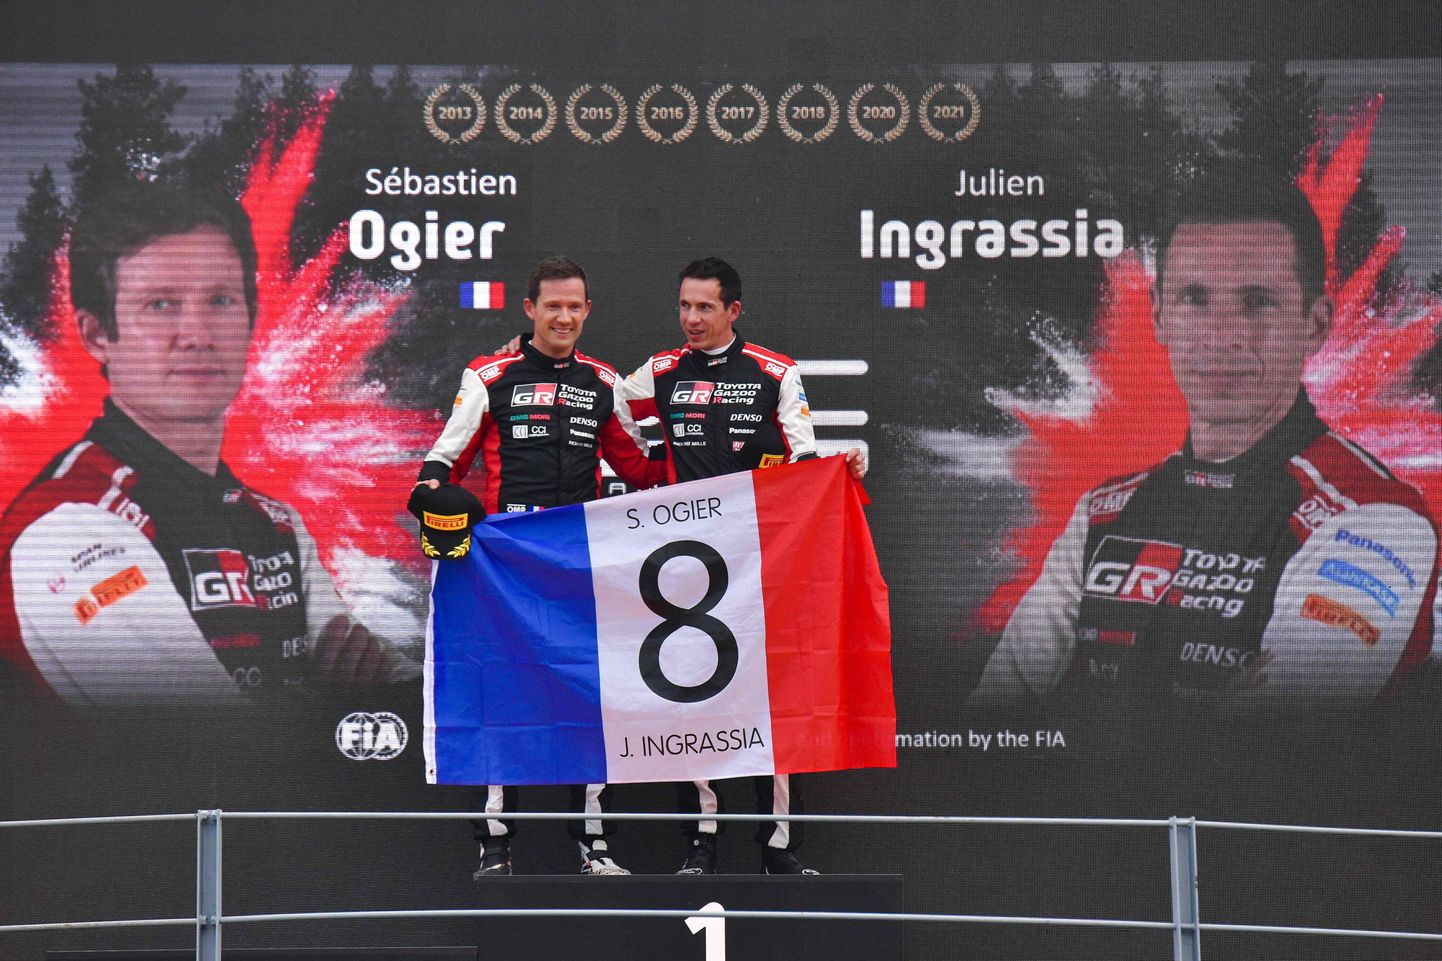 Sebastien Ogier ja Julien Ingrassia tulid kaheksandat korda autoralli maailmameistriteks!